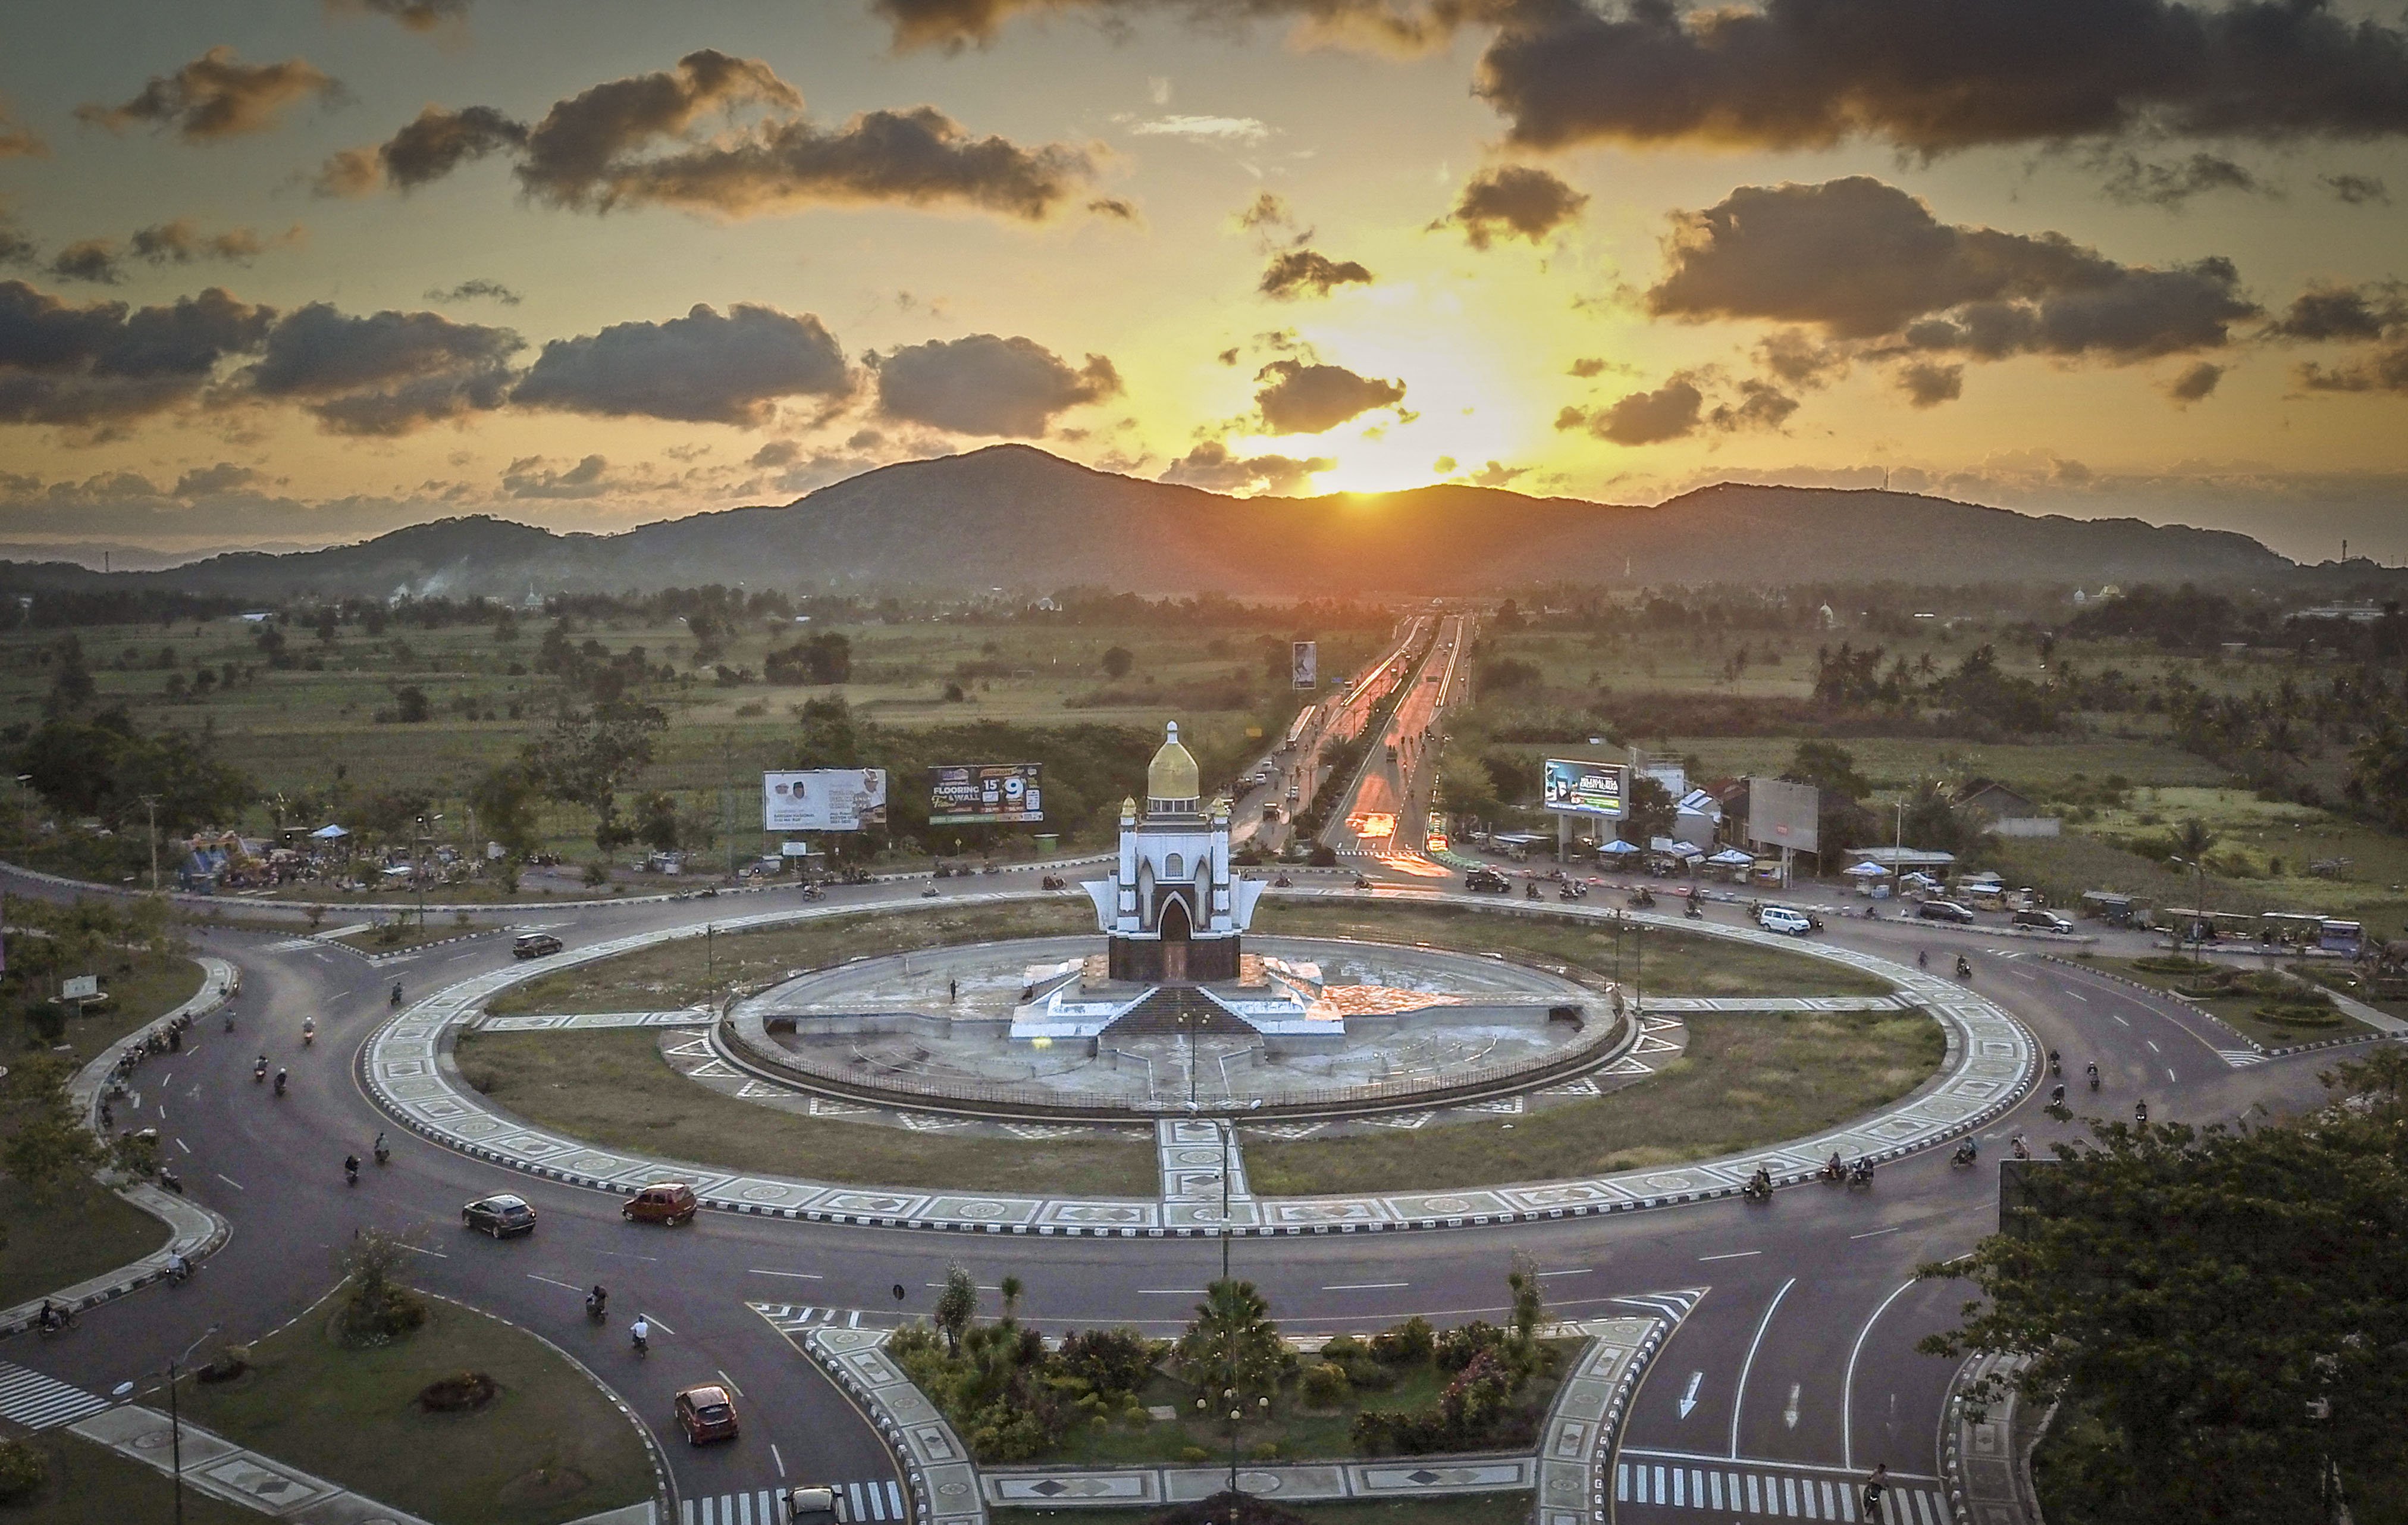 Foto udara Kawasan Tugu Giri Menang Square (TGMS), Gerung, Lombok Barat, Nusa Tenggara Barat, Minggu, (4/10/2021).. Lombok adalah surga destinasi wisata. Hampir semua sudut di daerah ini menyimpan potensi alam luar biasa yang mengundang decak kagum.